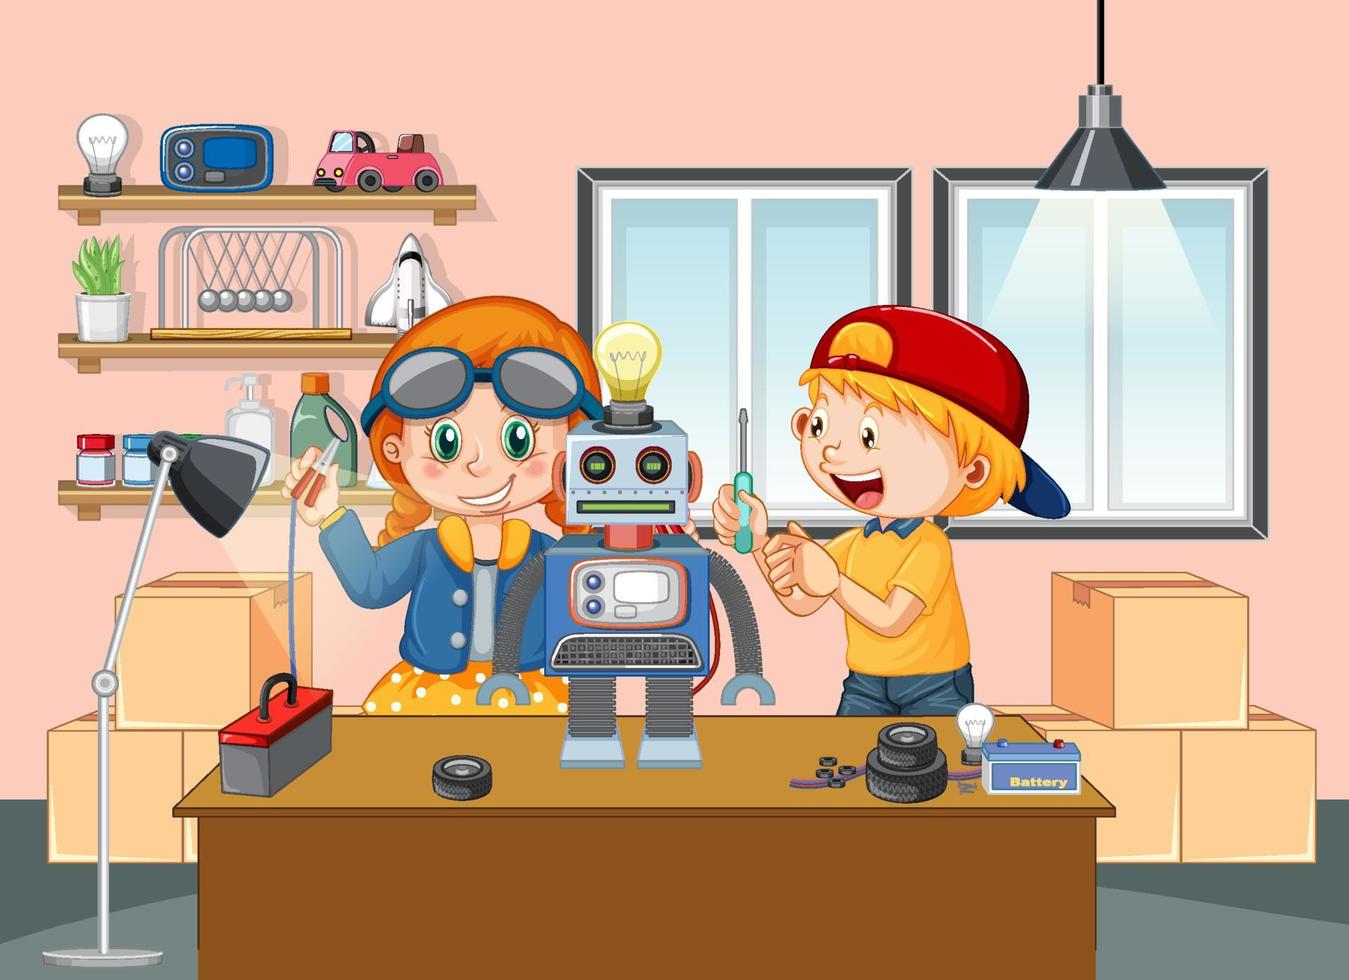 bambini che costruiscono robot insieme nella scena della stanza vettore